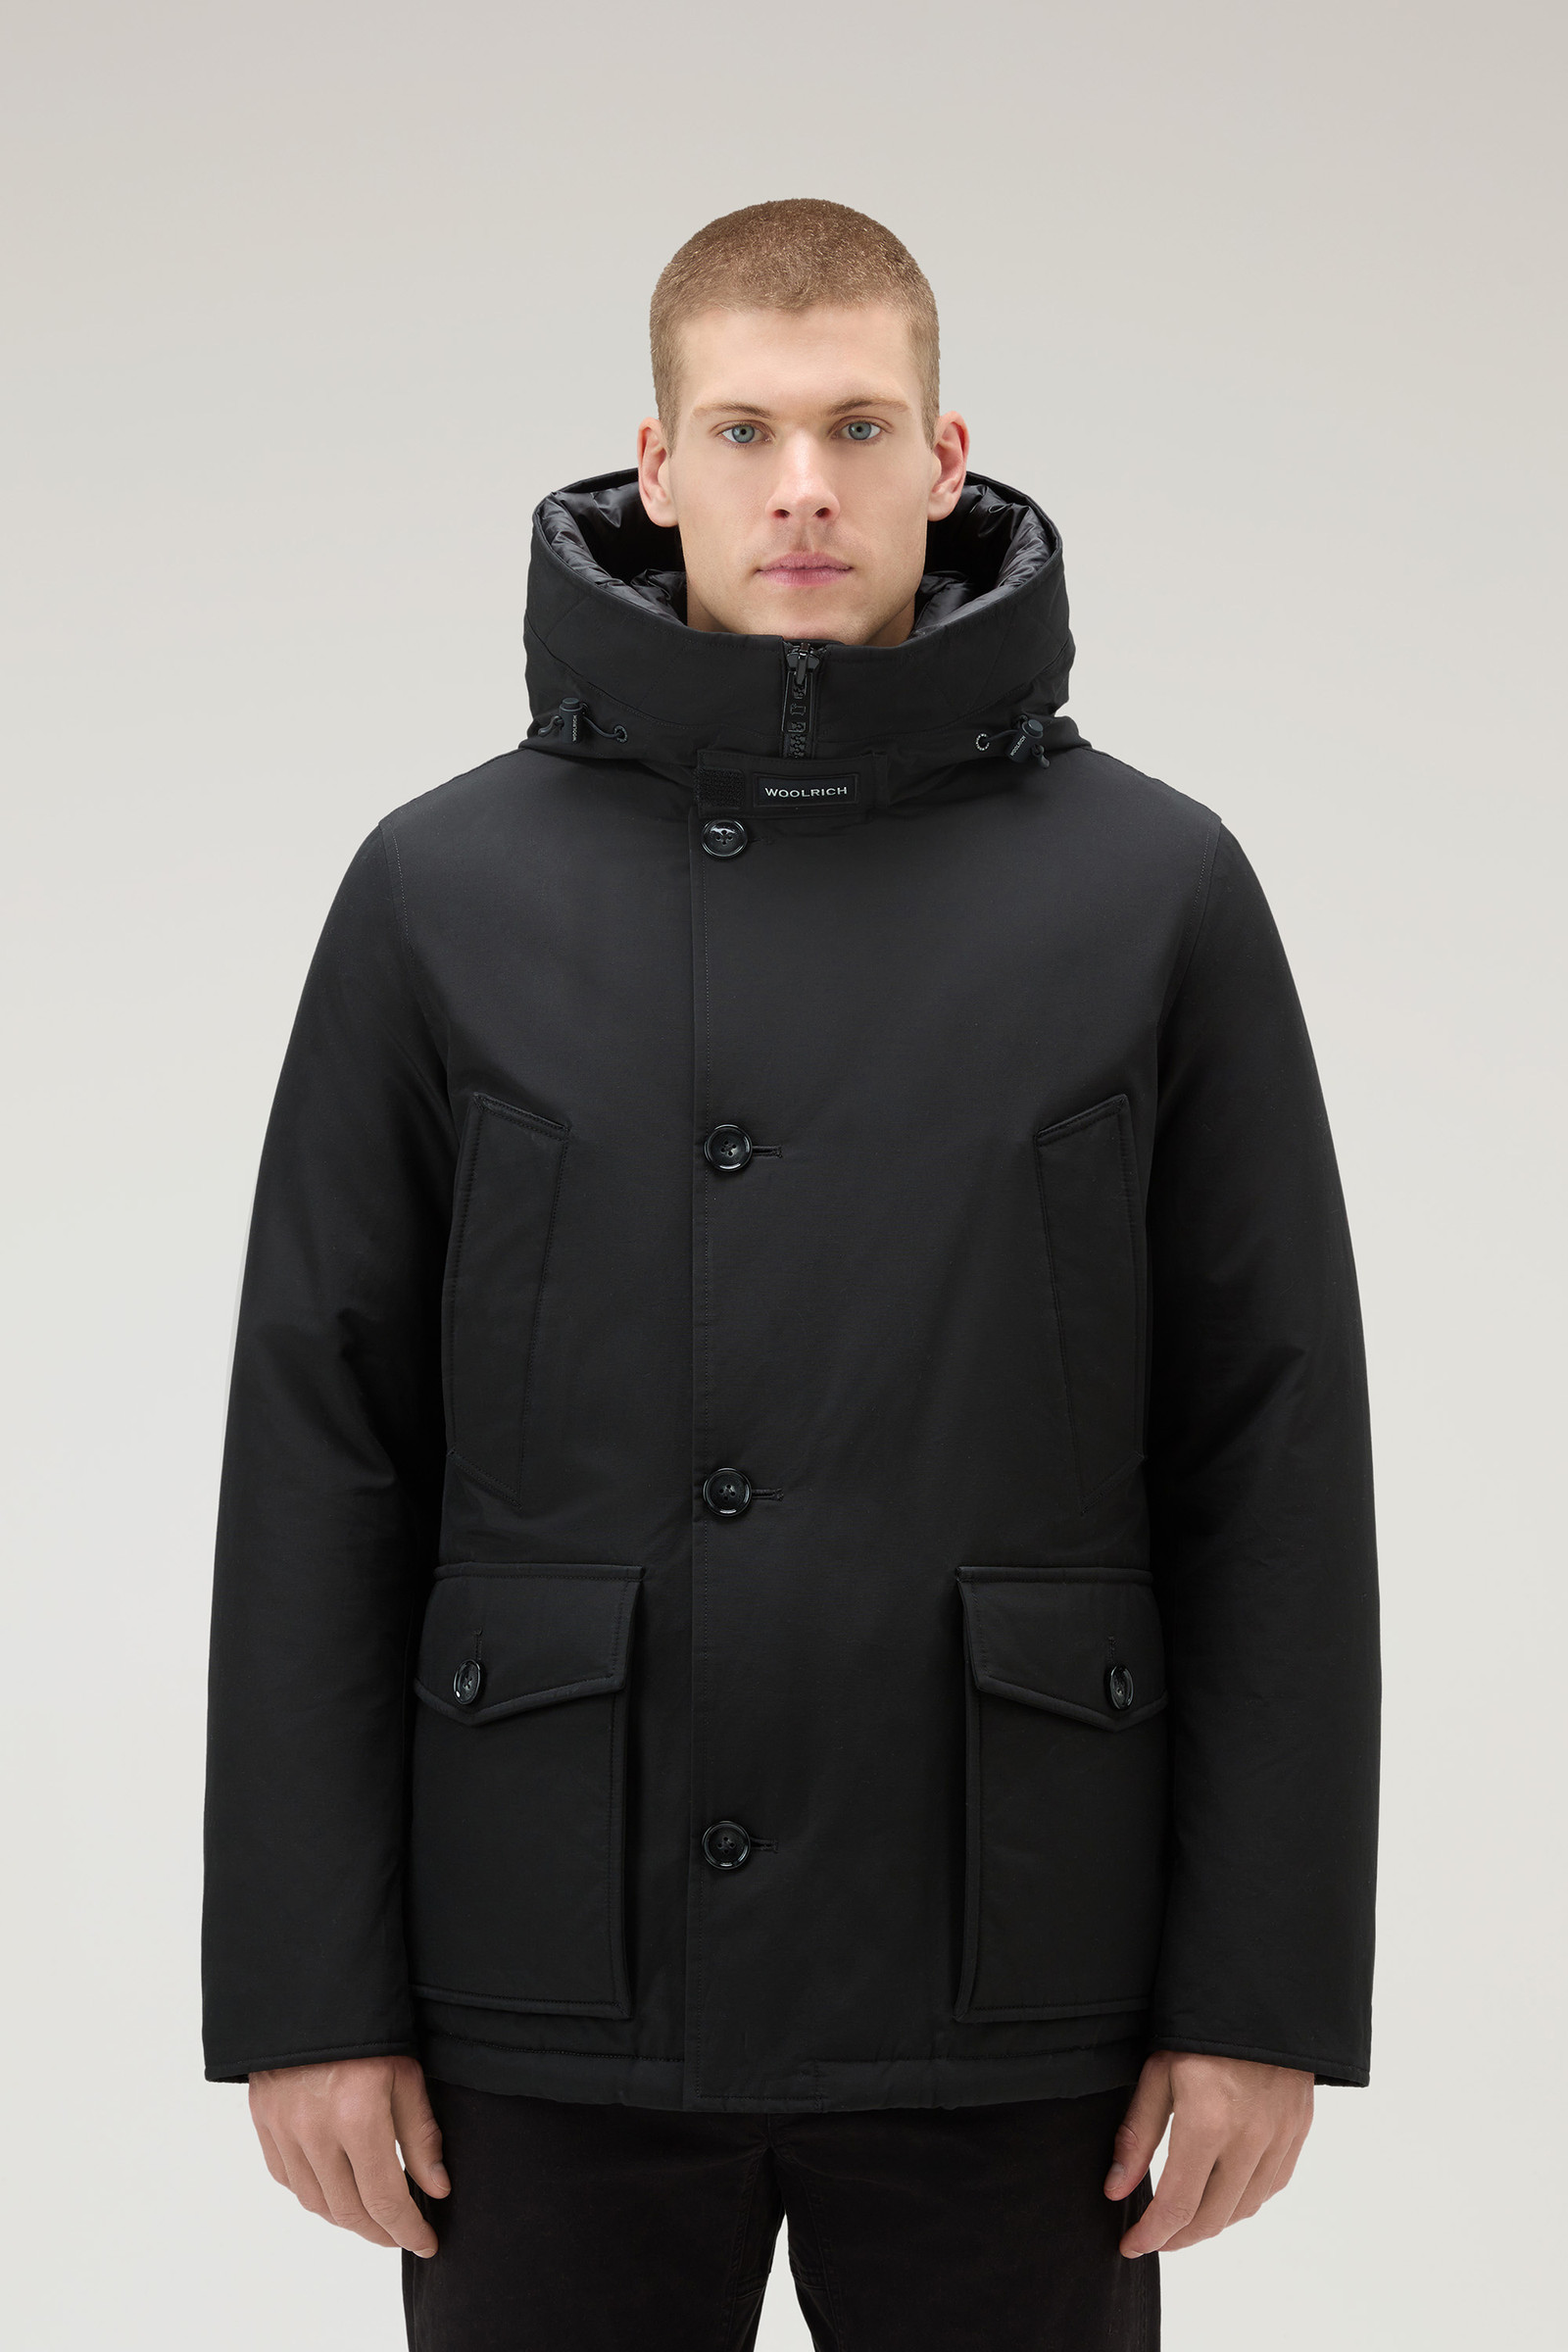 Woolrich Men's Arctic Parka in Ramar Cloth with Detachable Fur Trim Color Black Size XL